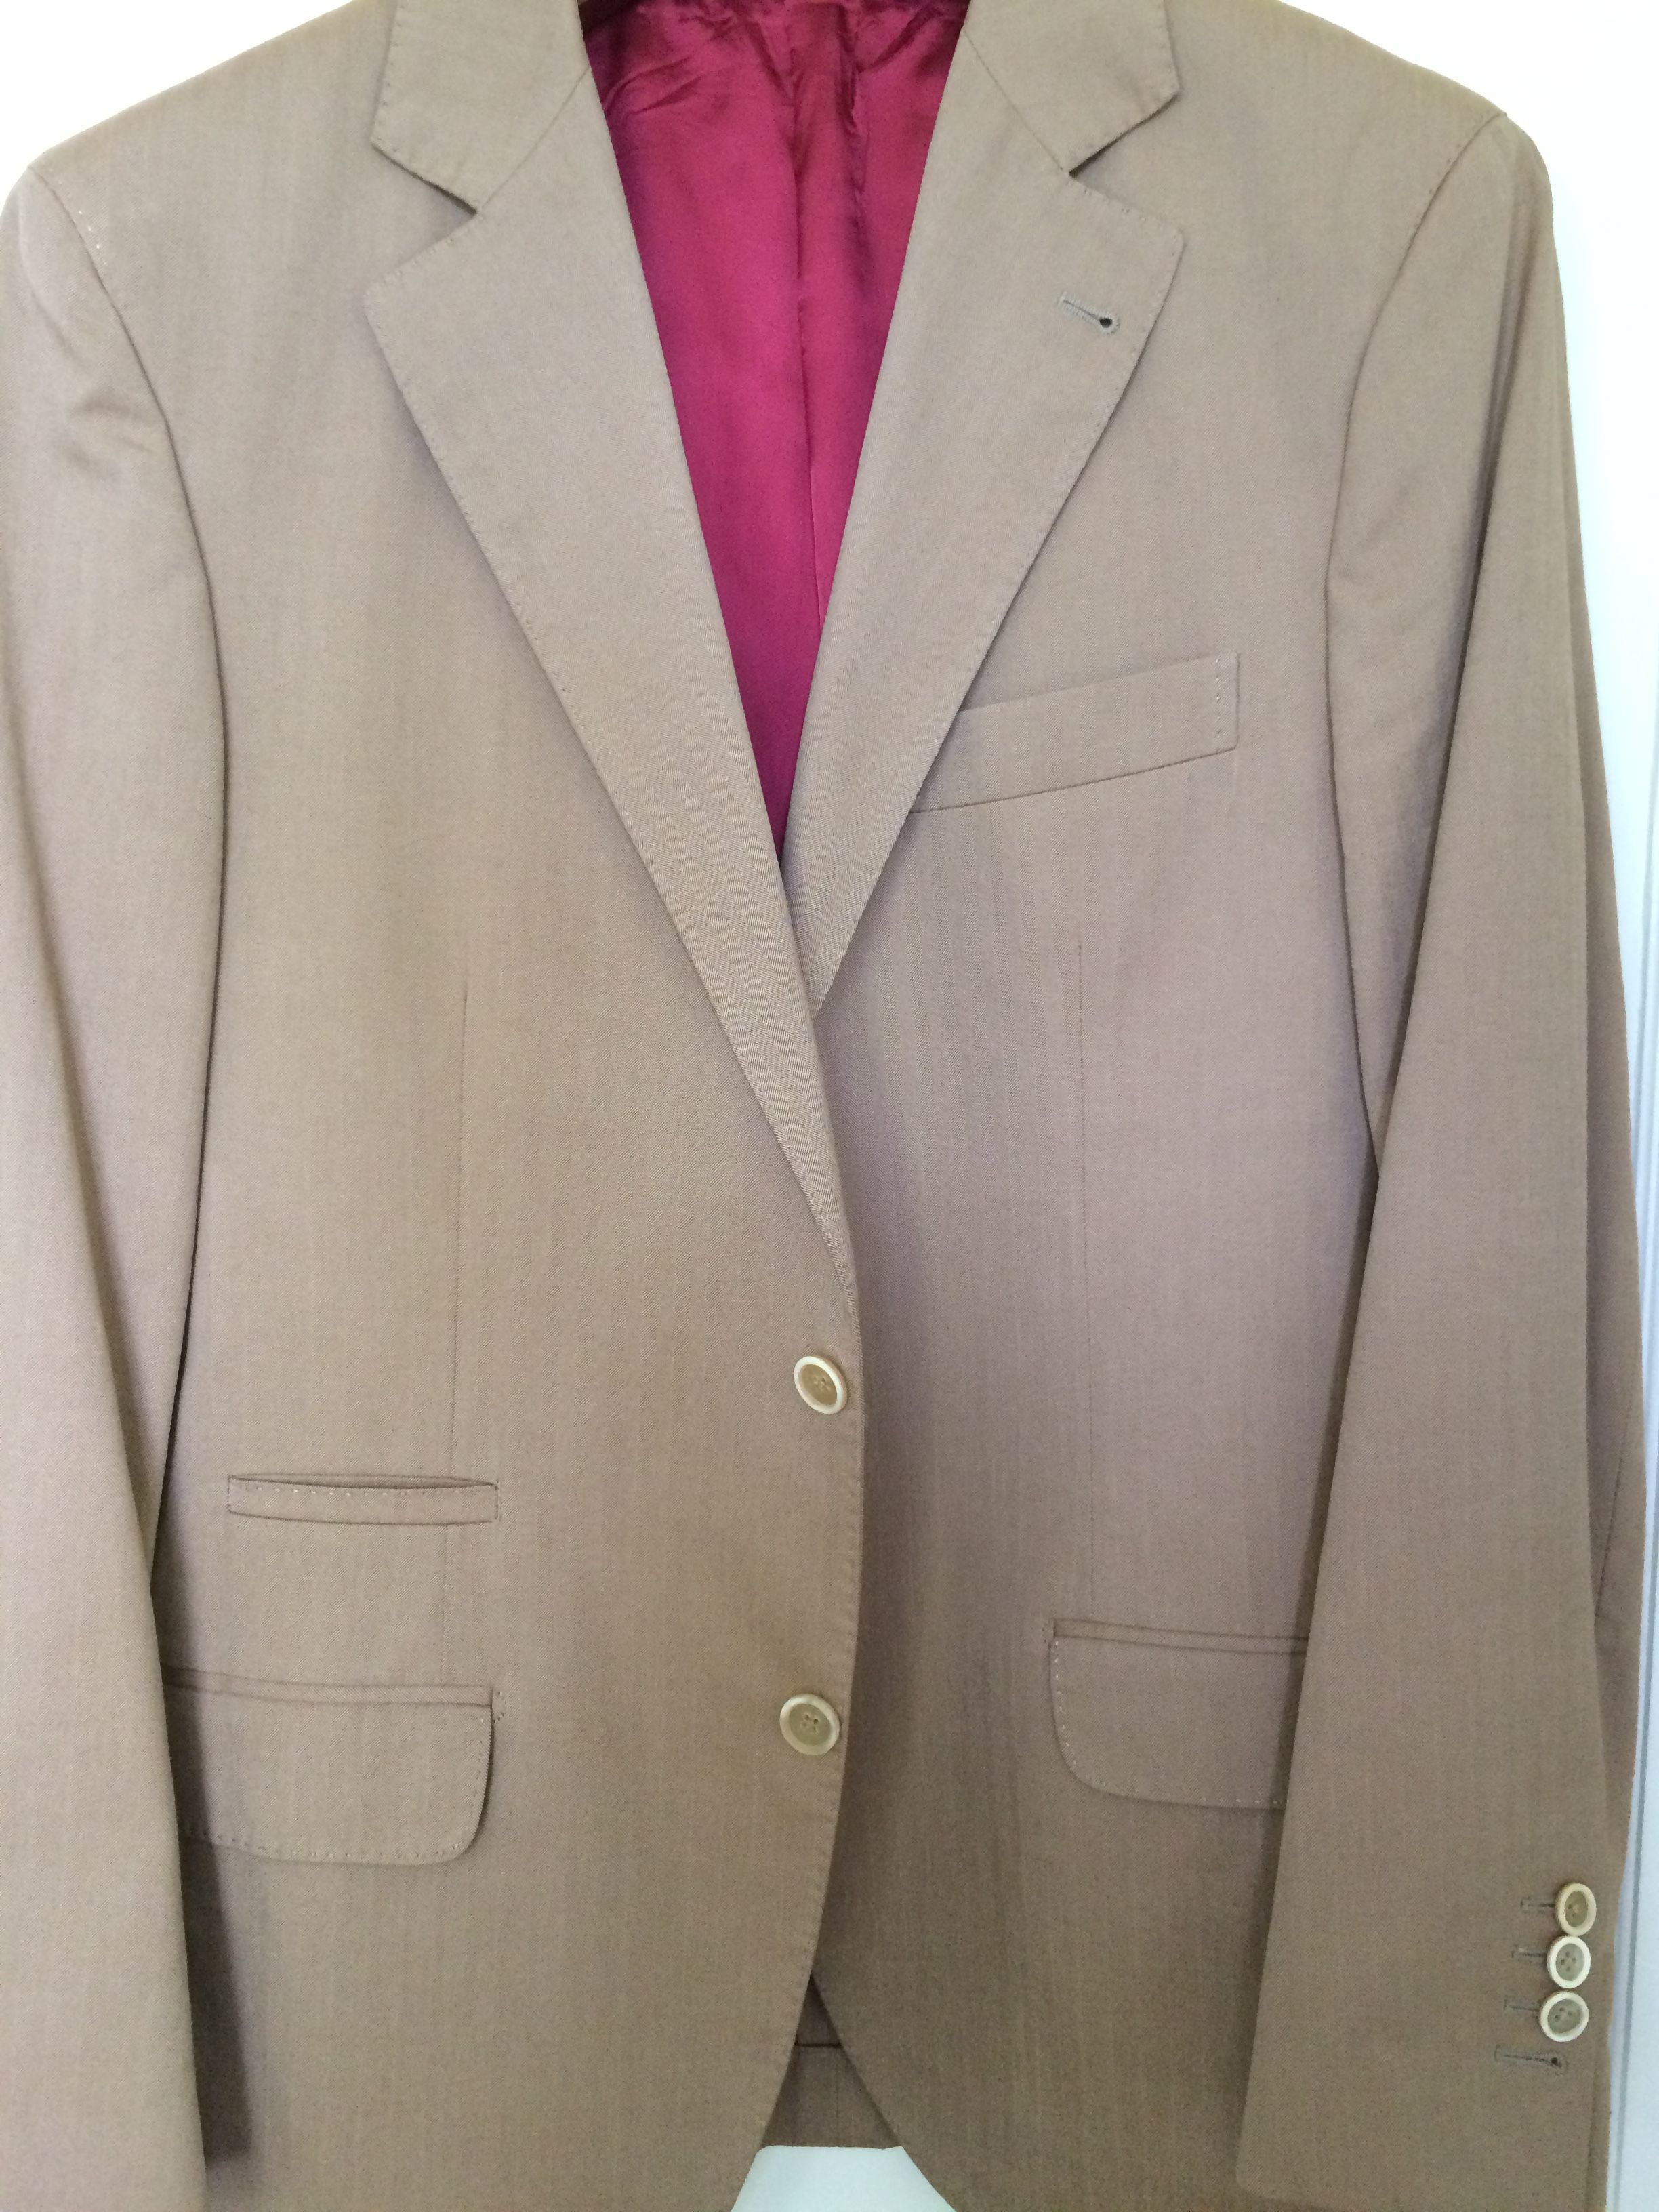 NWT Belvest Tan Two Button Single Vent Cotton Linen Blend Sportcoat 40 40r